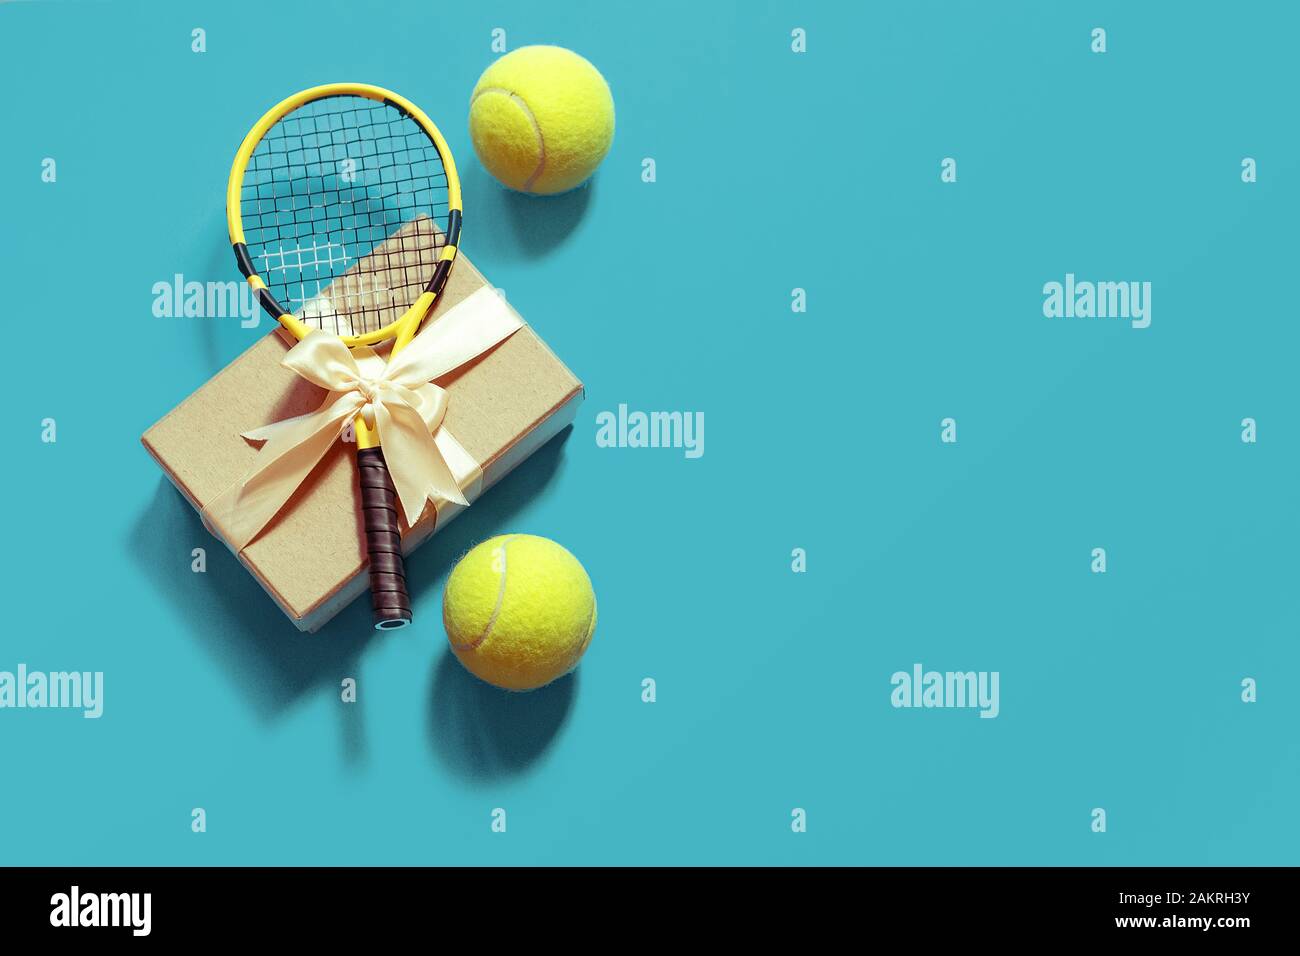 tenis love diseño pelotas de tenis y raqueta de regalo en caja Foto de stock